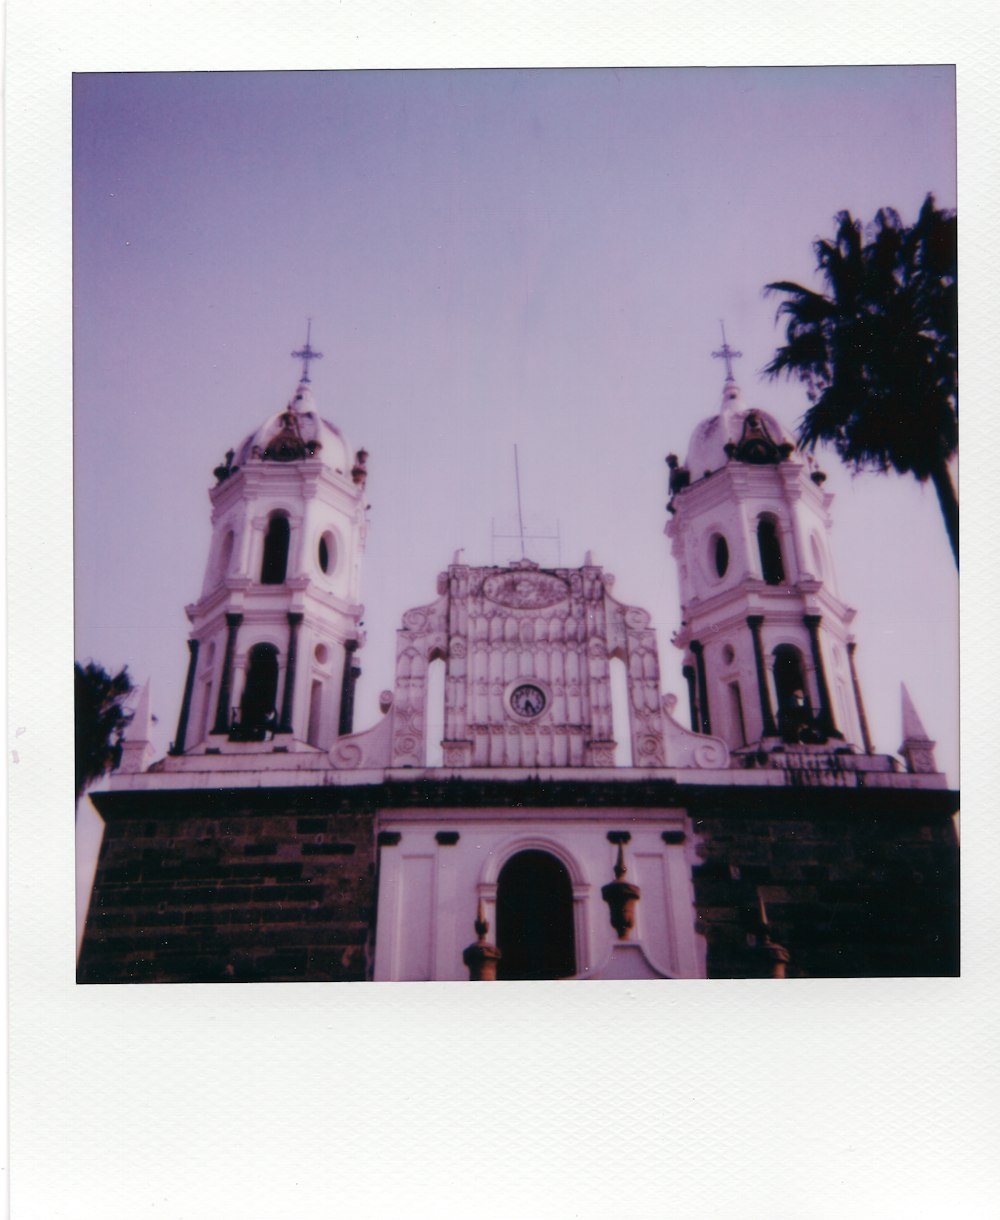 Foto en escala de grises de la catedral cerca de las palmeras